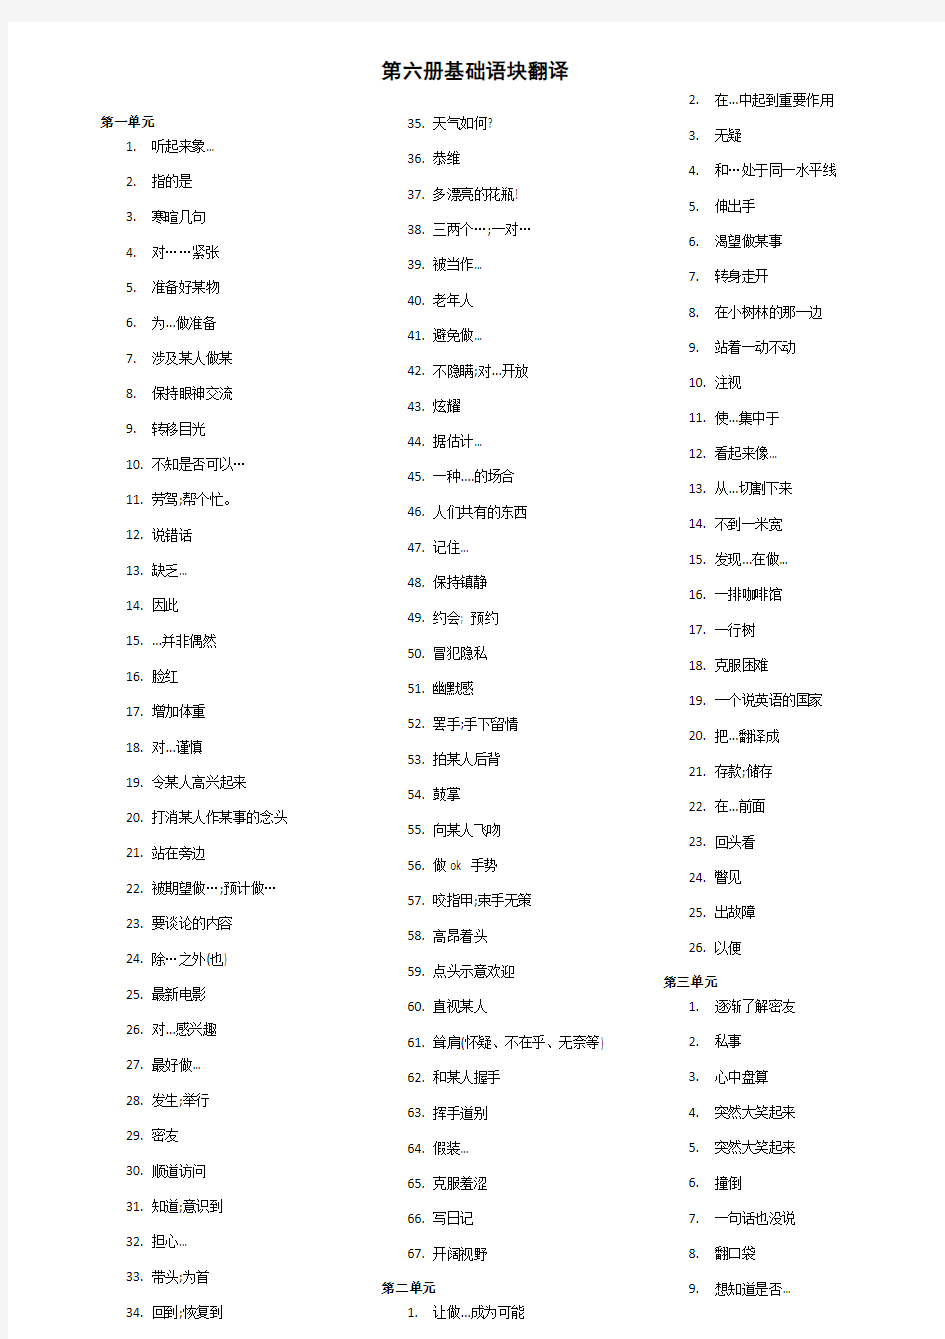 六册语块翻译(汉语版)